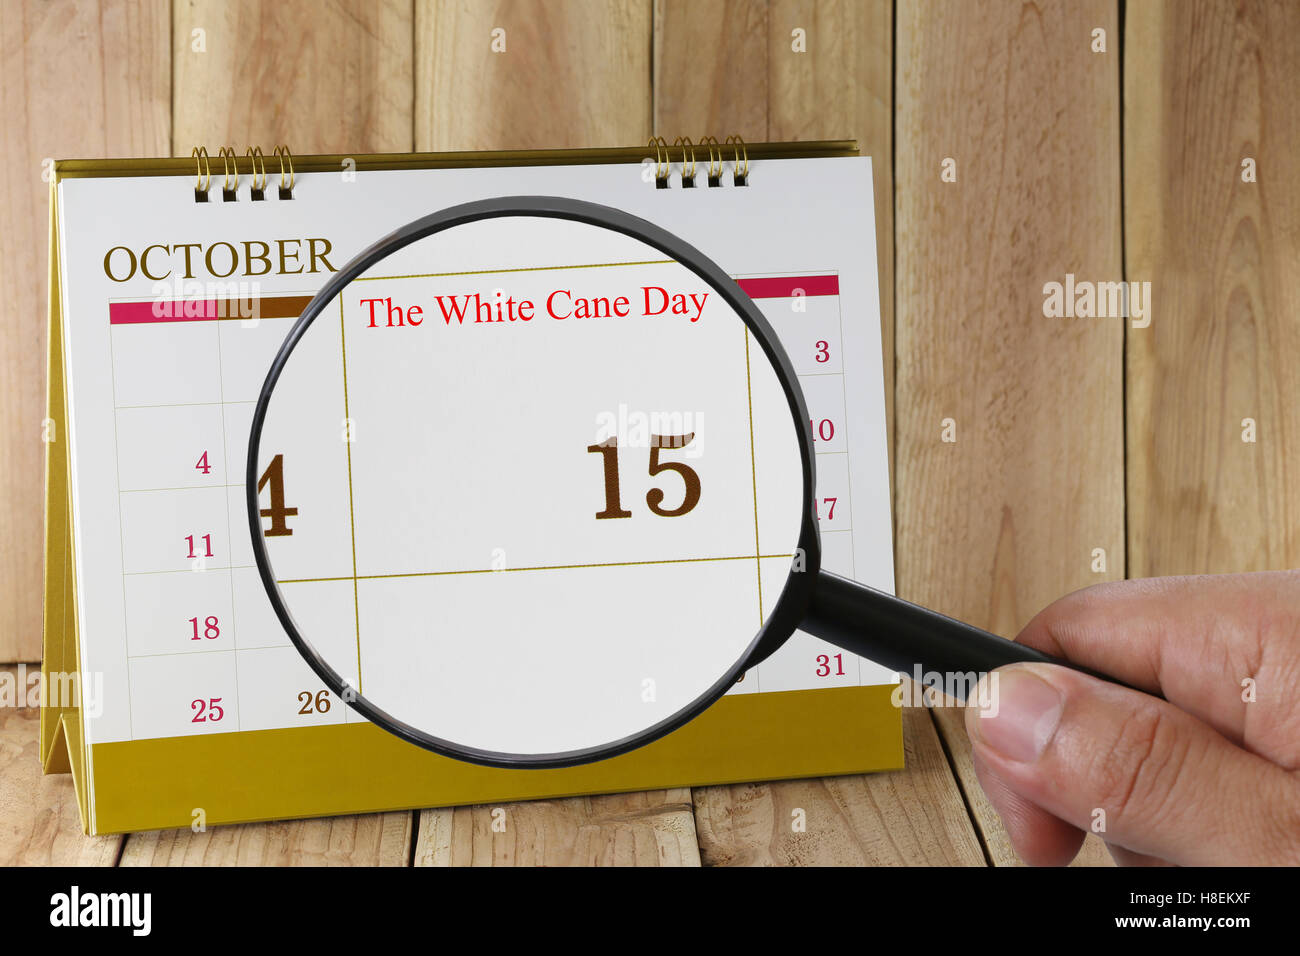 Kalender, die Sie The White Cane Day am 15. Oktober Konzept einer PR-Kampagne aussehen können feiern die Errungenschaften der thos Stockfoto